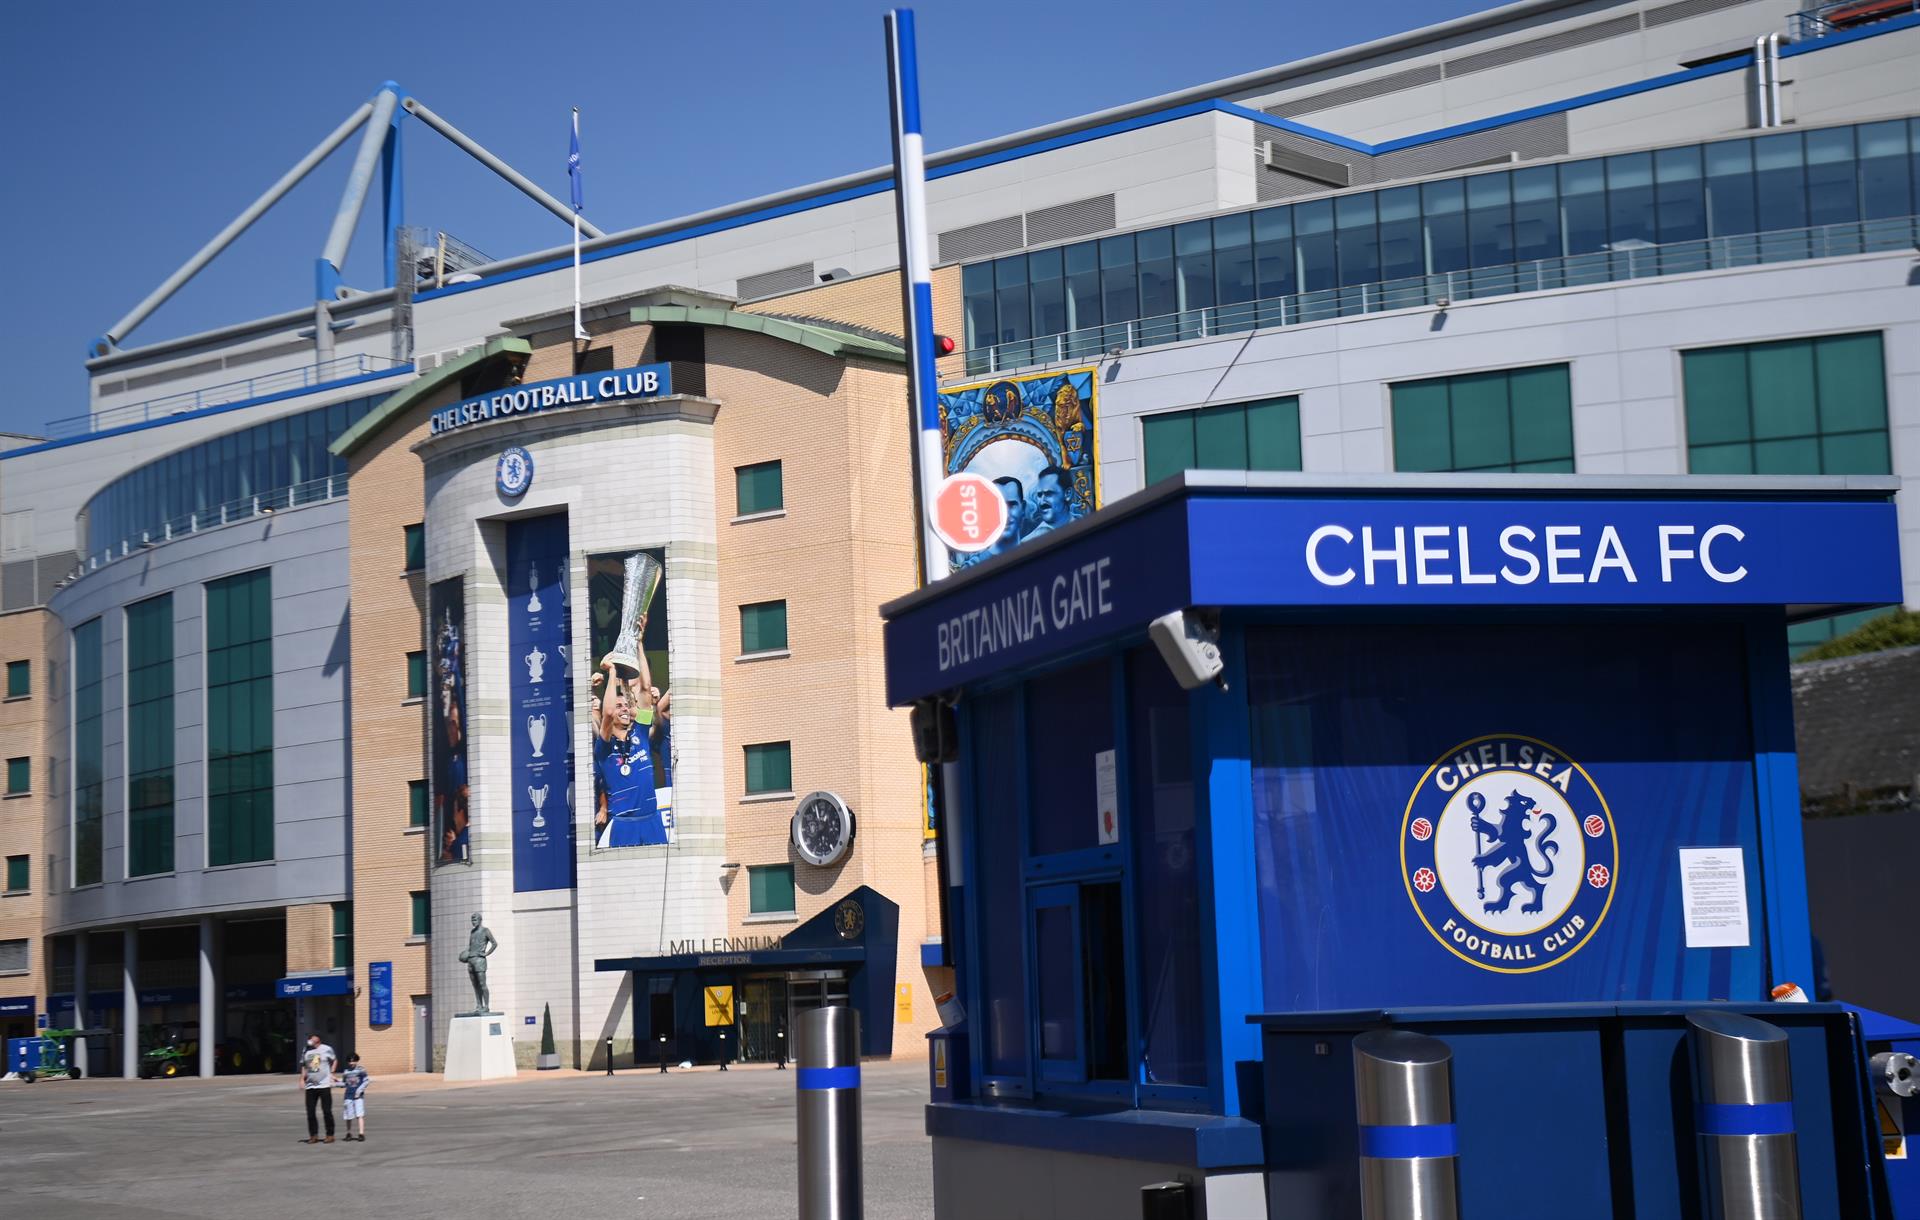 El Chelsea, gran perjudicado tras sanciones de Reino Unido contra Roman Abramovich (Detalles)